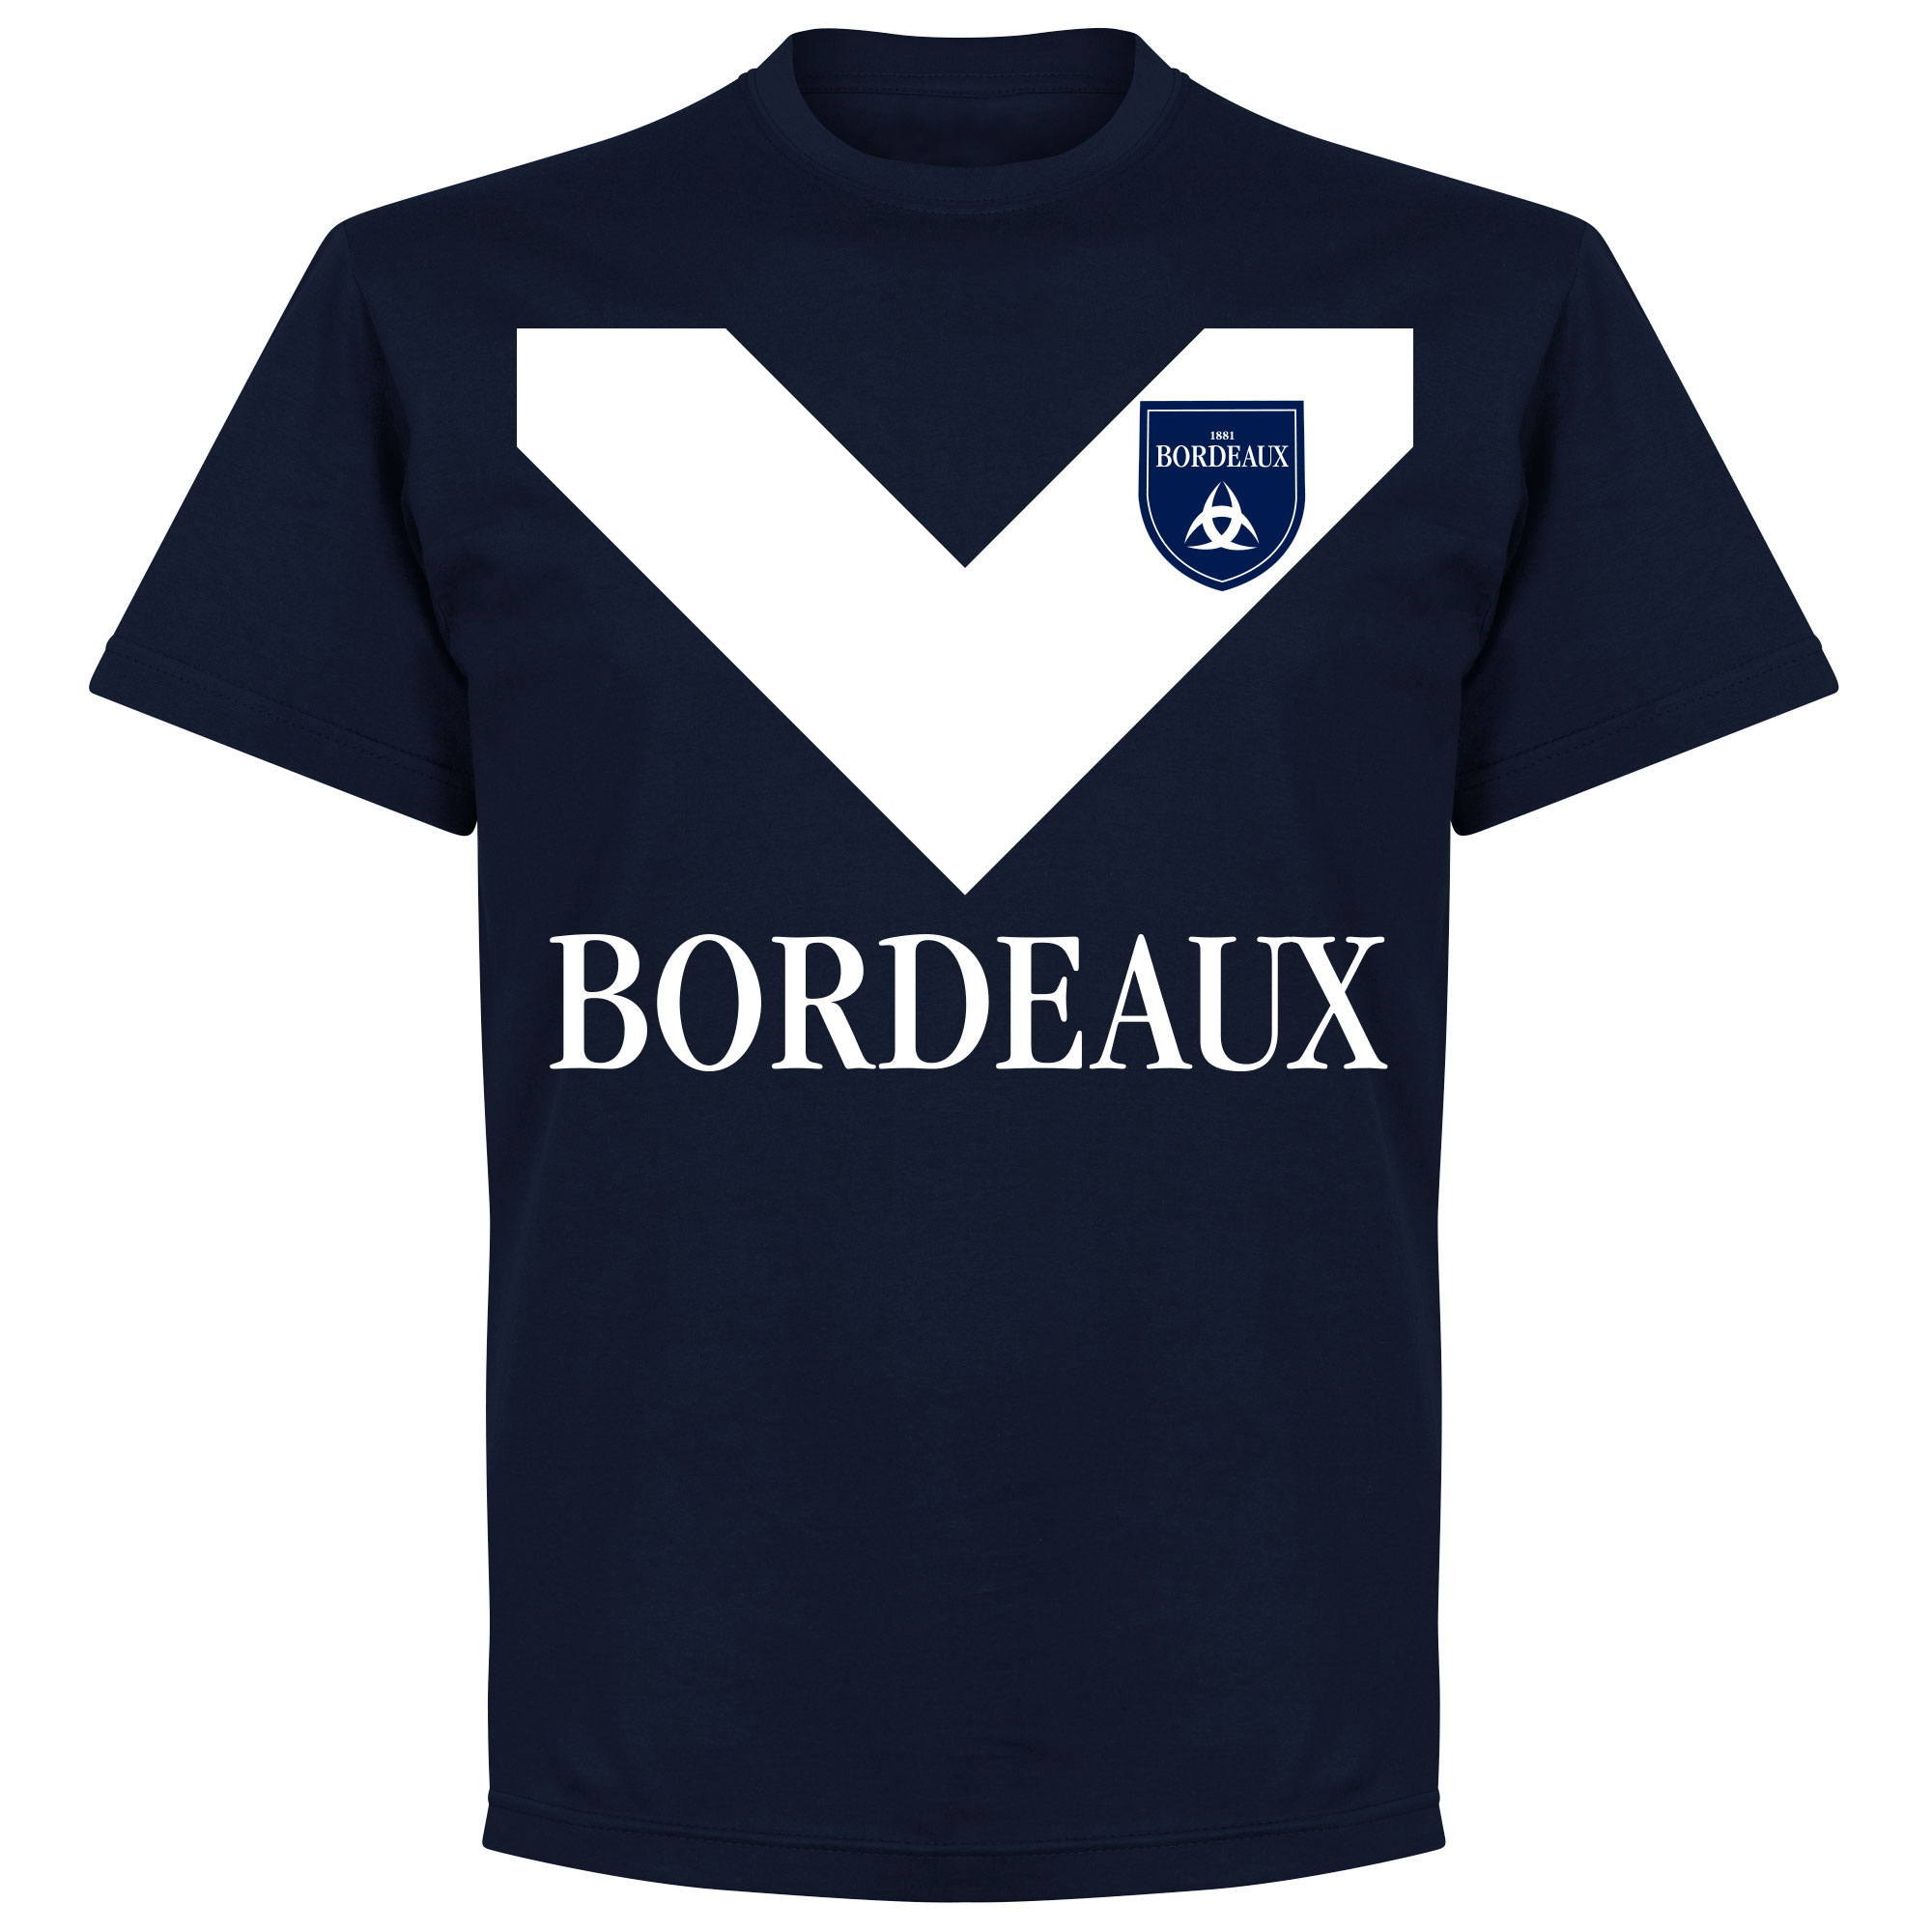 Bordeaux Team T-Shirt - Navy - XXXL